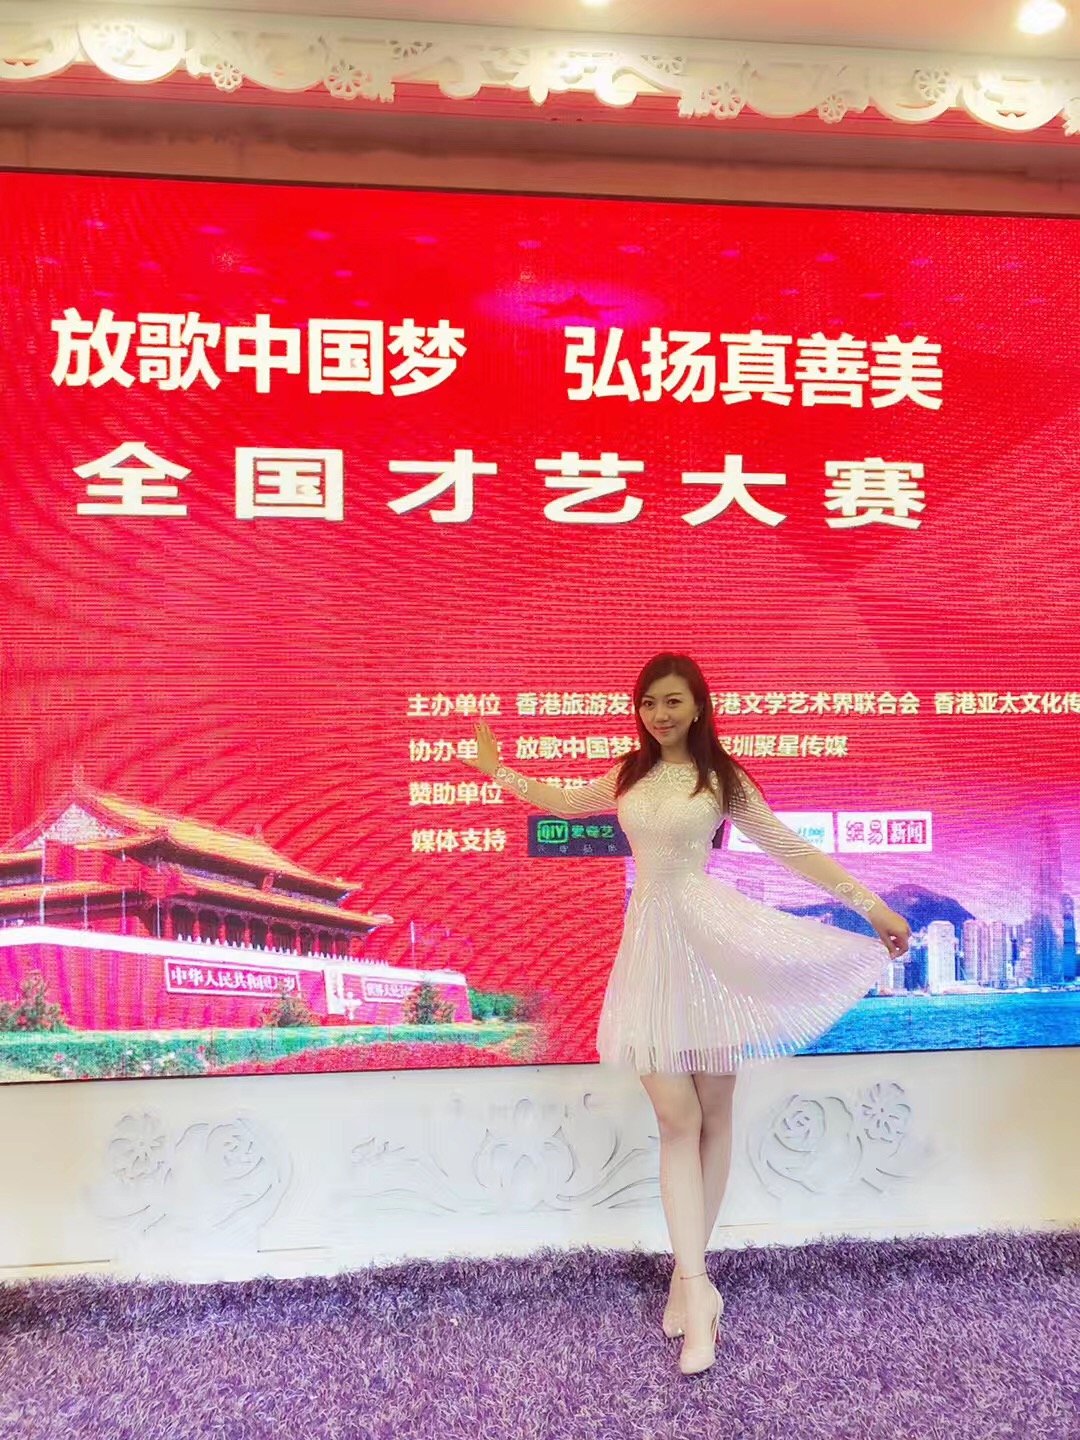 艺人张梓淇受邀出席香港举办的全国大赛并获奖(图2)